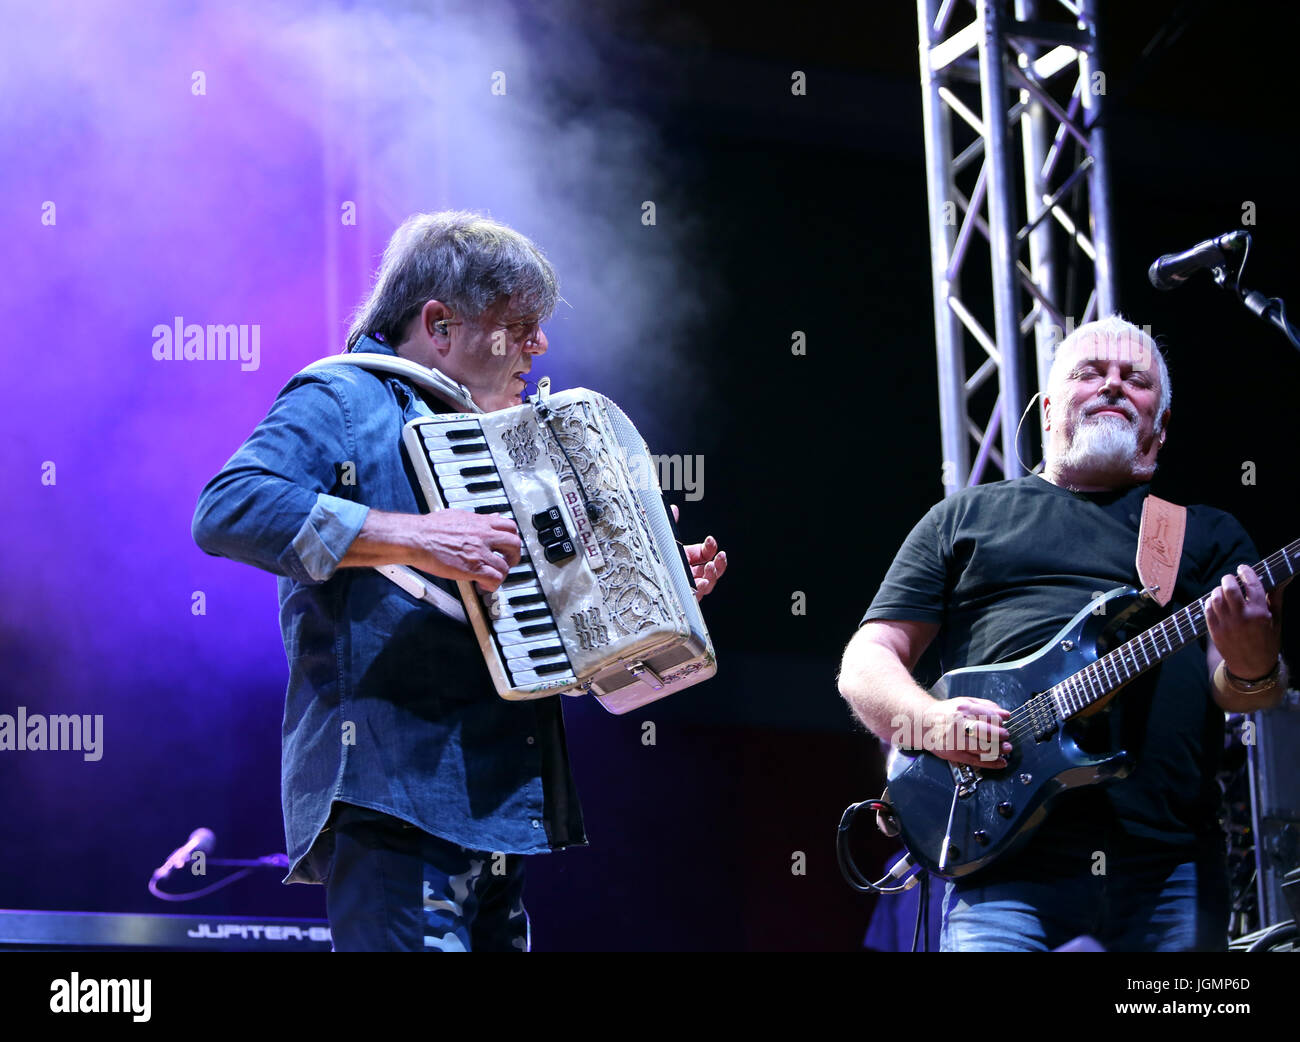 Bassano del Grappa, VI, Italie - 29 Avril 2017 : Carletti Beppe joue de l'accordéon et Falzone Cico guitariste d'un groupe de rock italien Nomadi sur t Banque D'Images